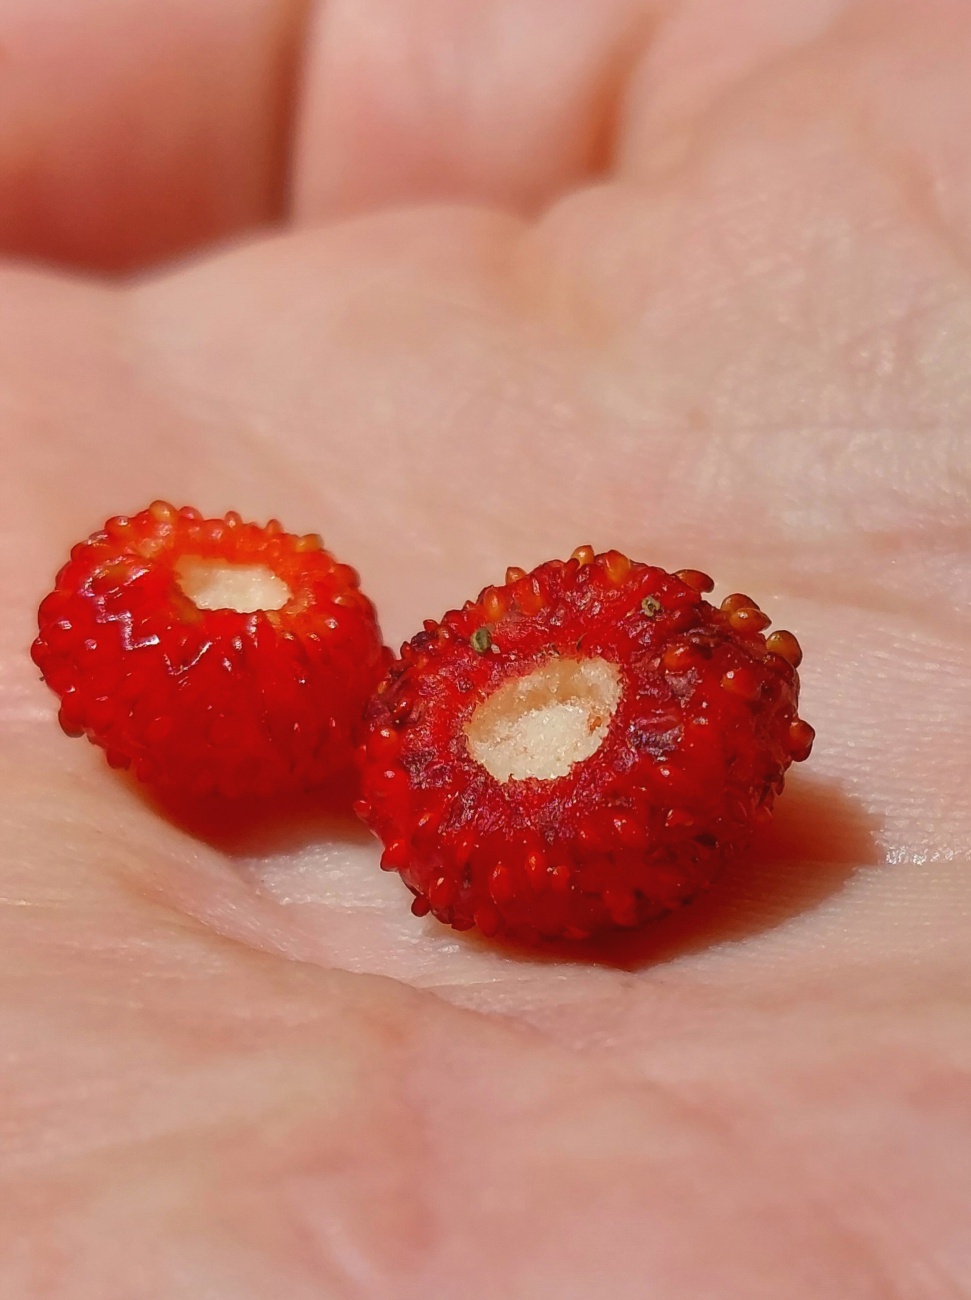 Foto: Martin Zehrer - Wald-Erdbeeren, gefunden im neusorger Wald. 